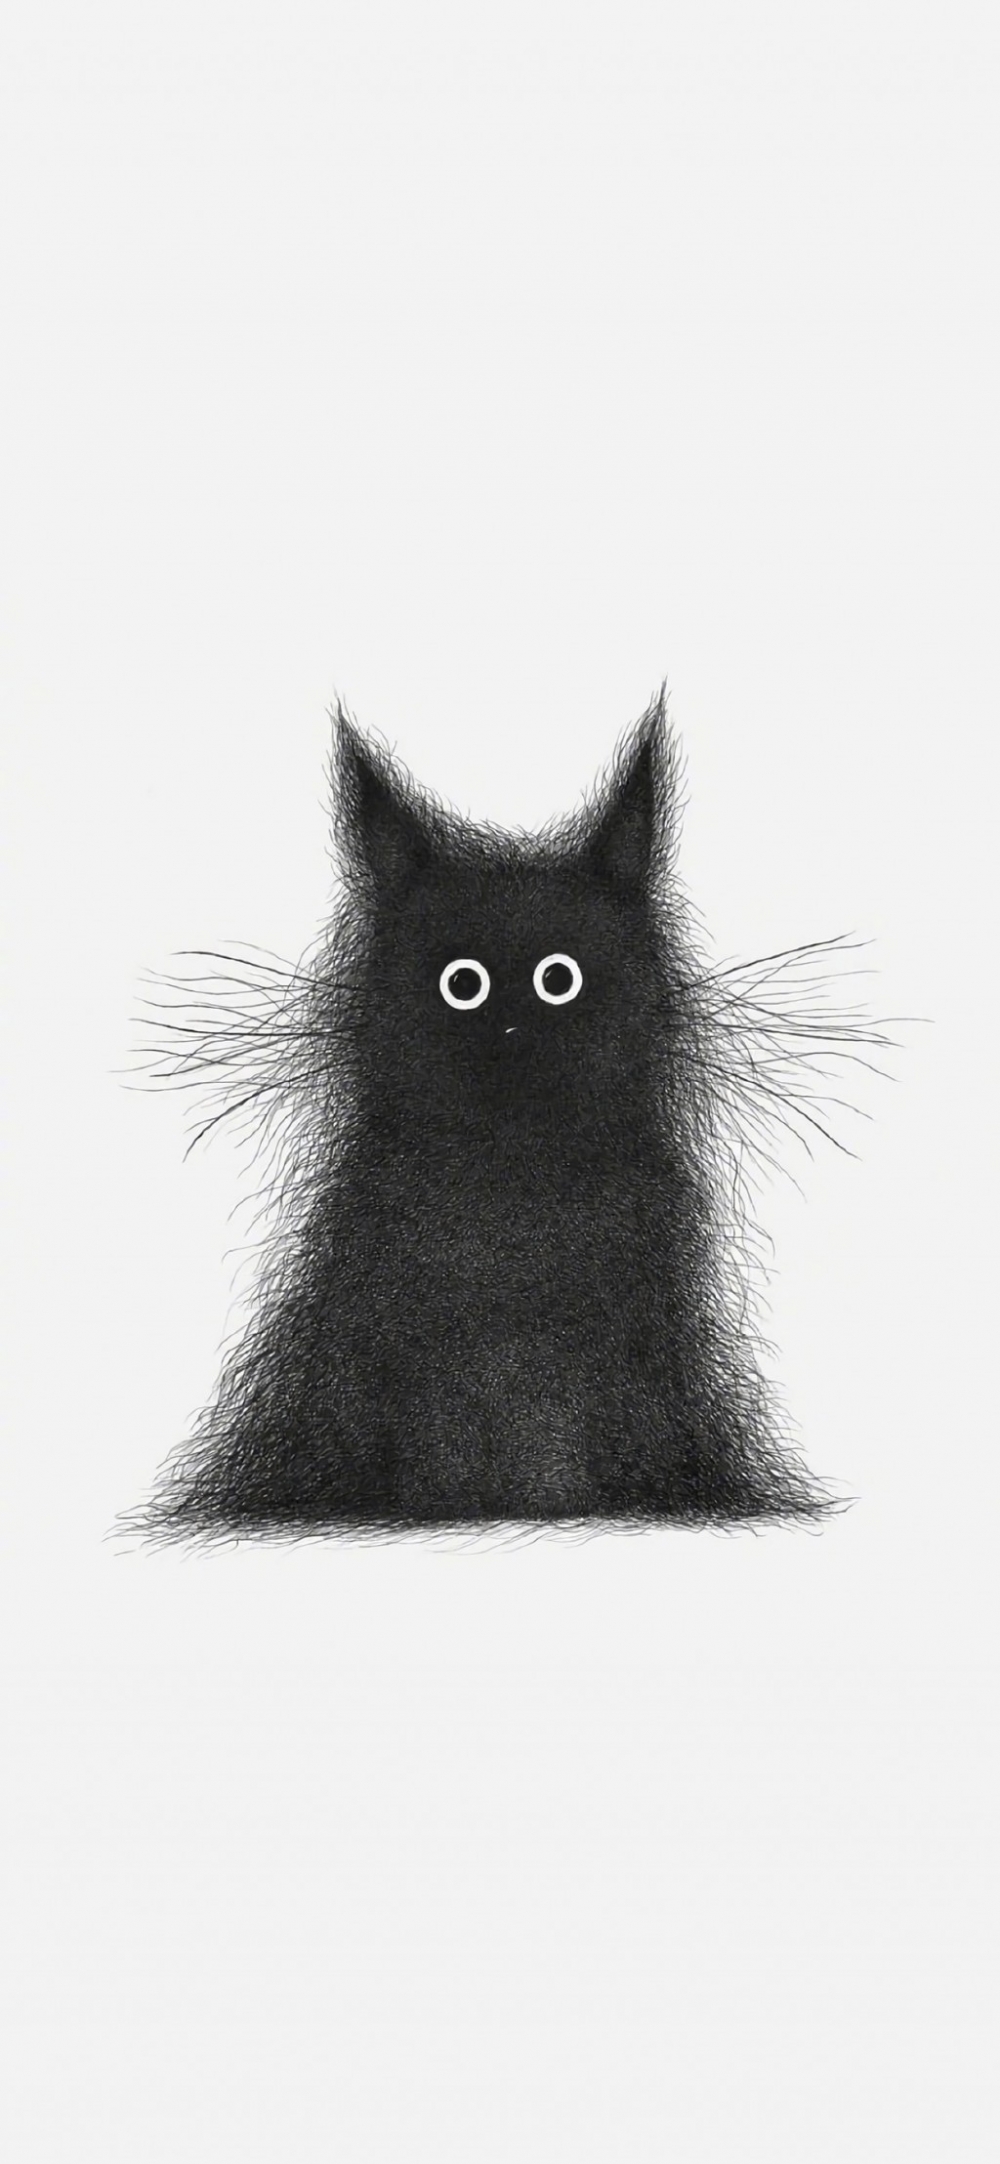 手绘全身黑色毛发猫咪卡通简约手机壁纸